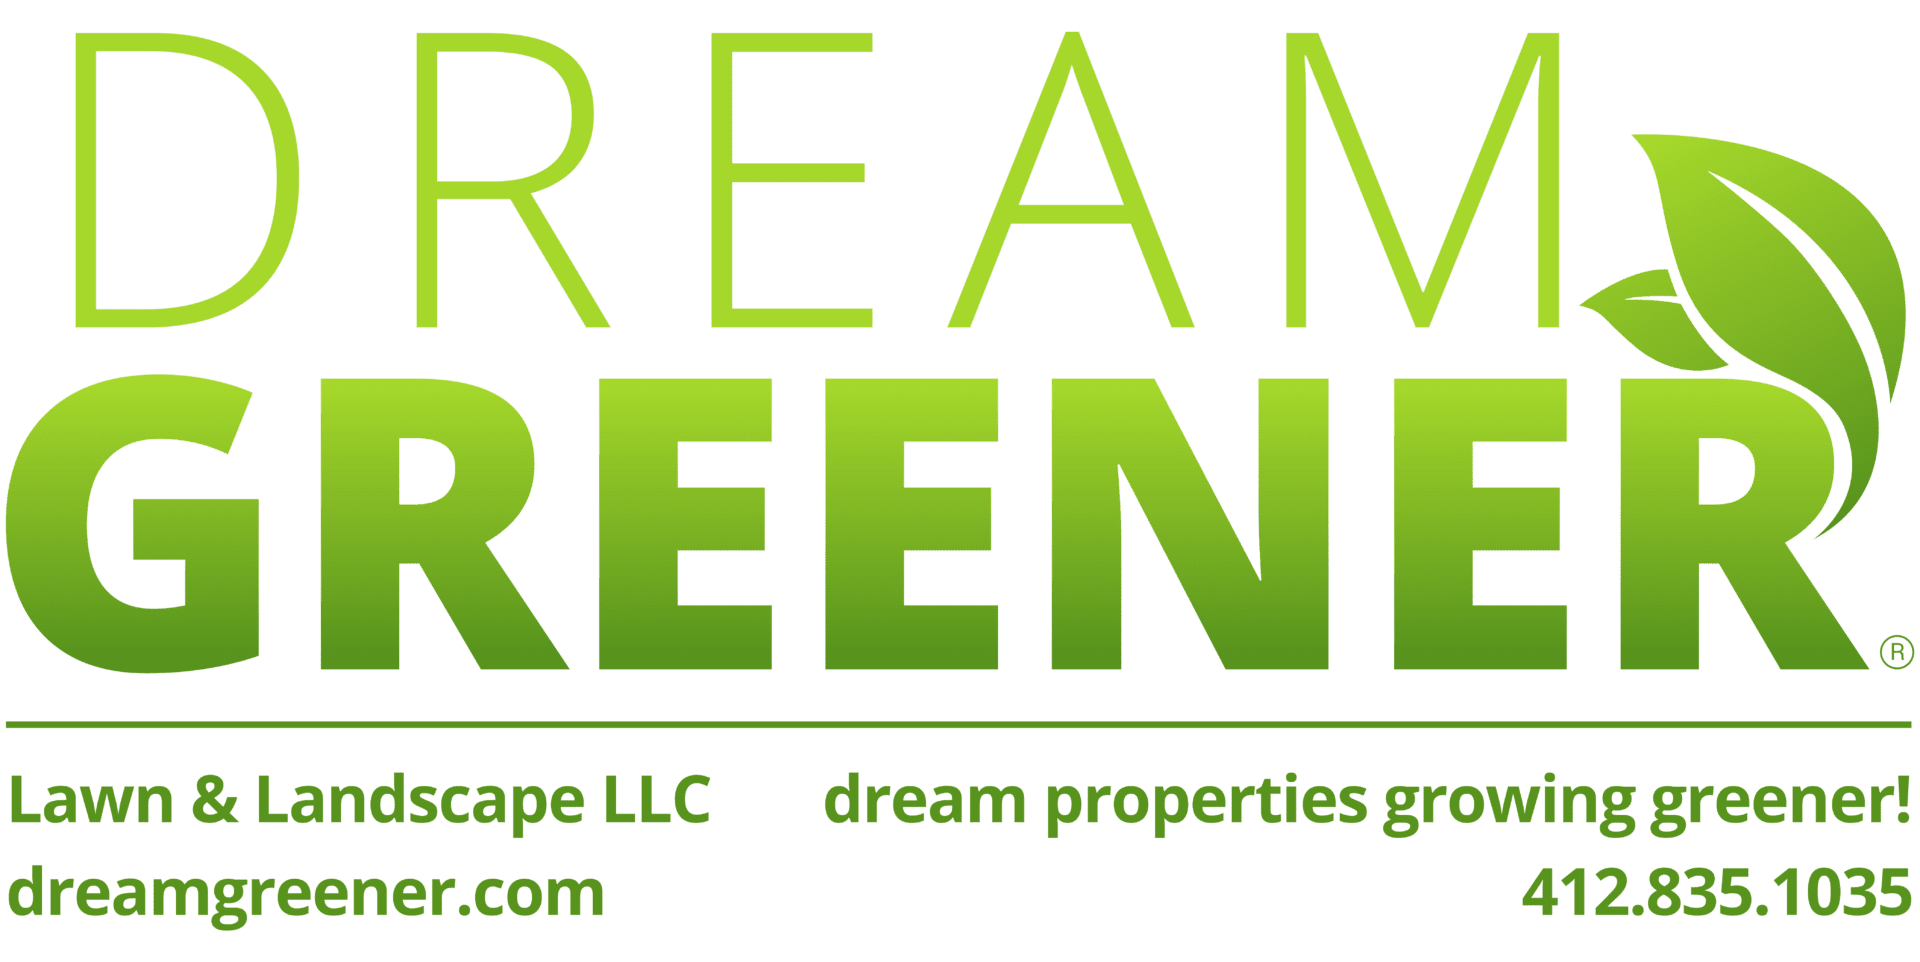 Dream Greener